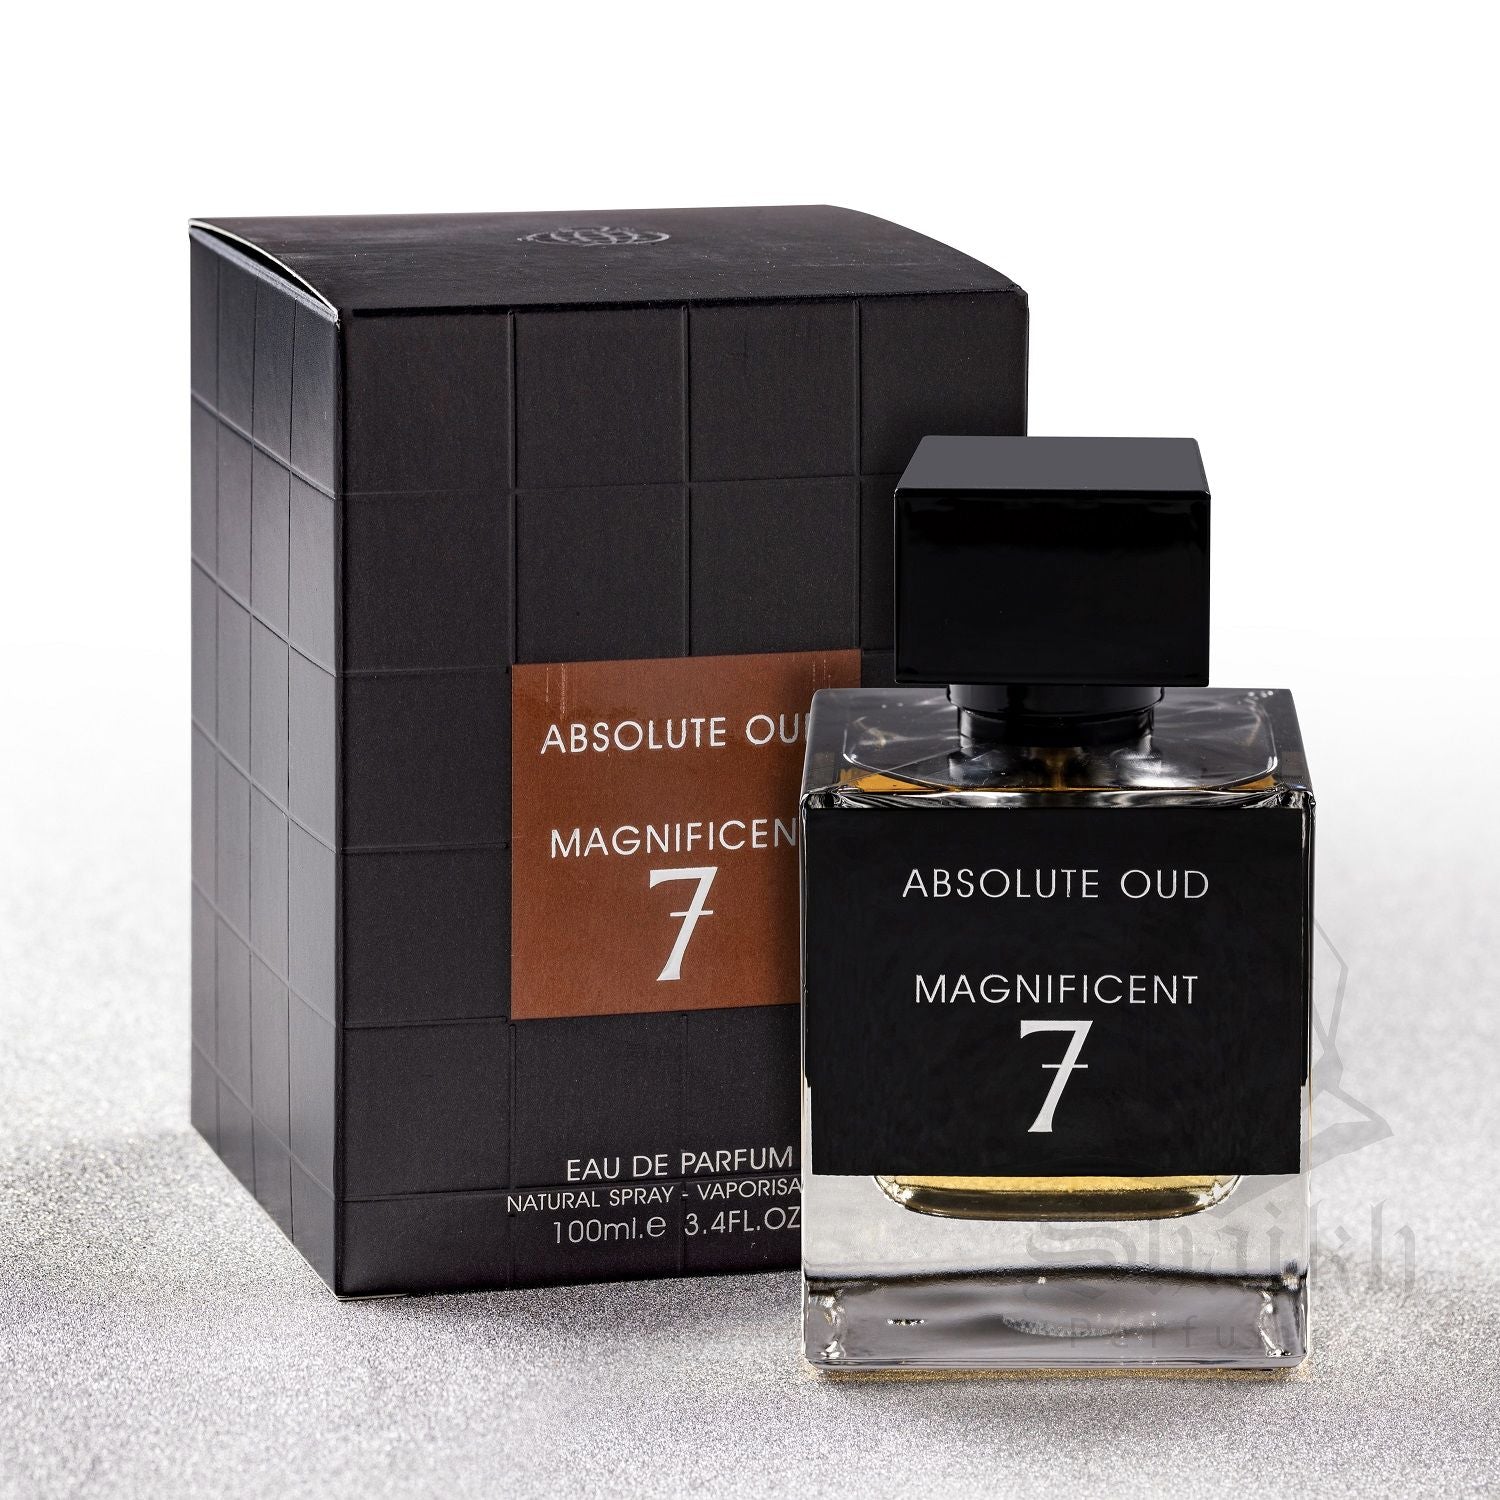 Absolute Oud Magnificent 7 Eau De Parfum By Fragrance World 100ml